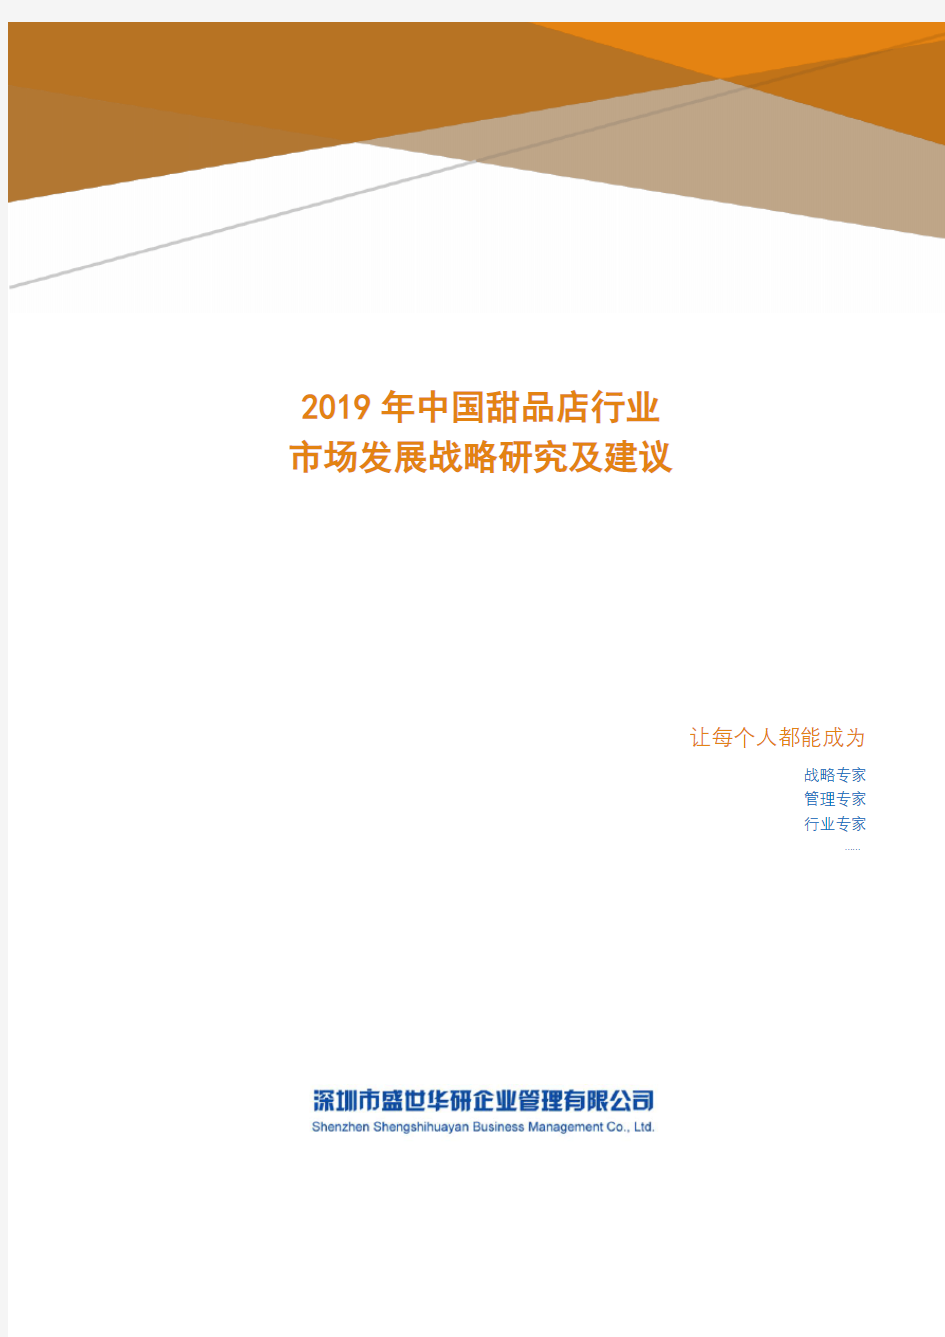 2019年中国甜品店行业市场发展战略研究及建议